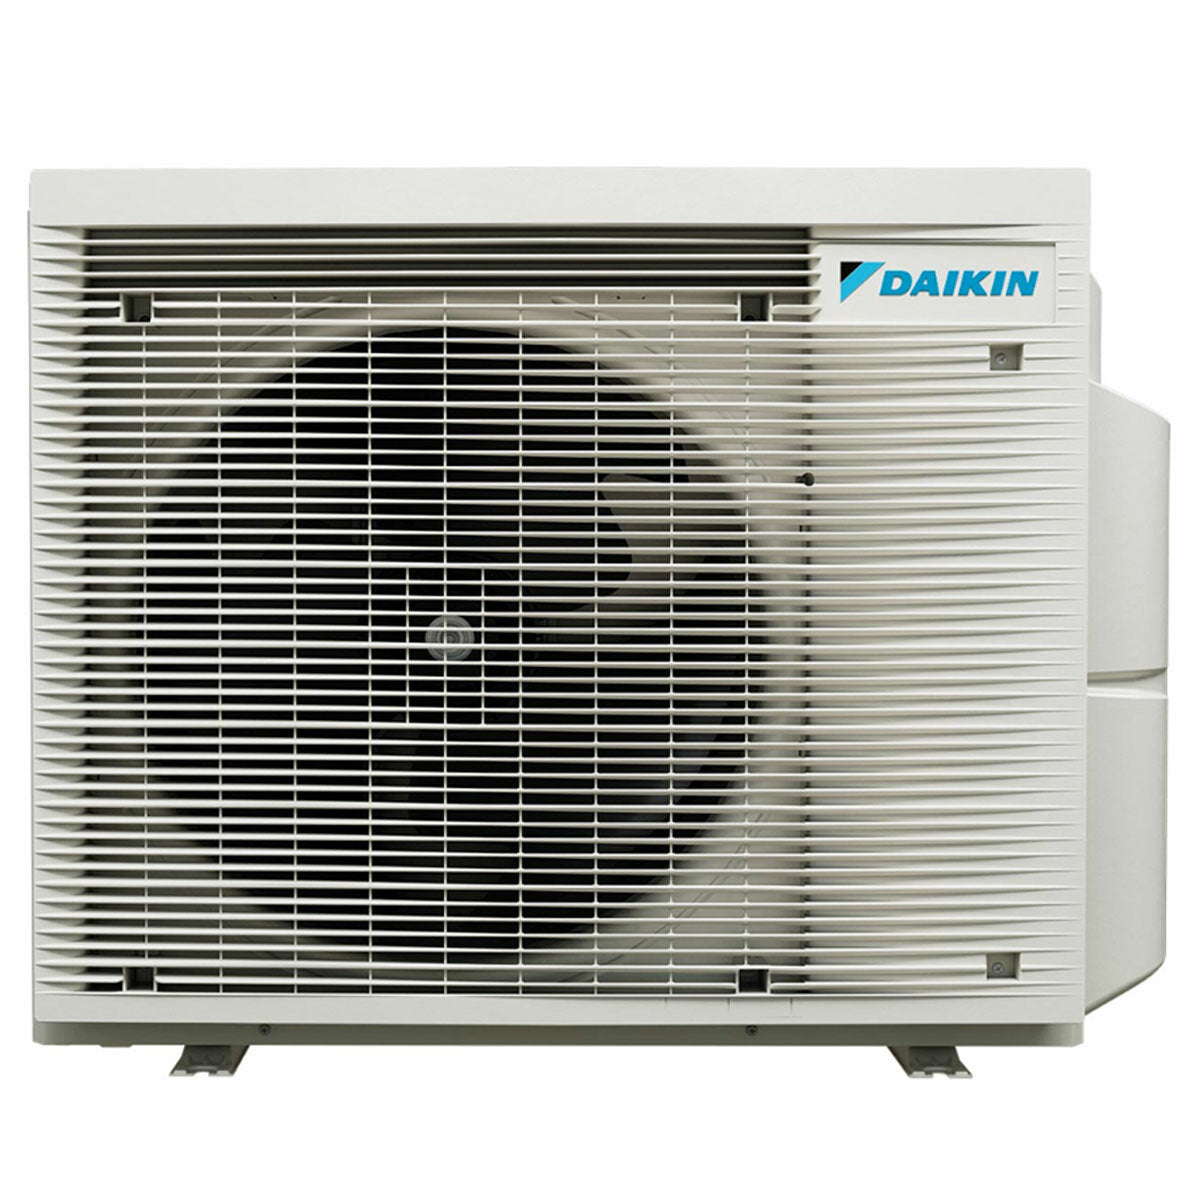 Daikin Stylish trial split air conditioner 7000 + 9000 + 15000 BTU inverter A +++ wifi outdoor unit 5.2 kW